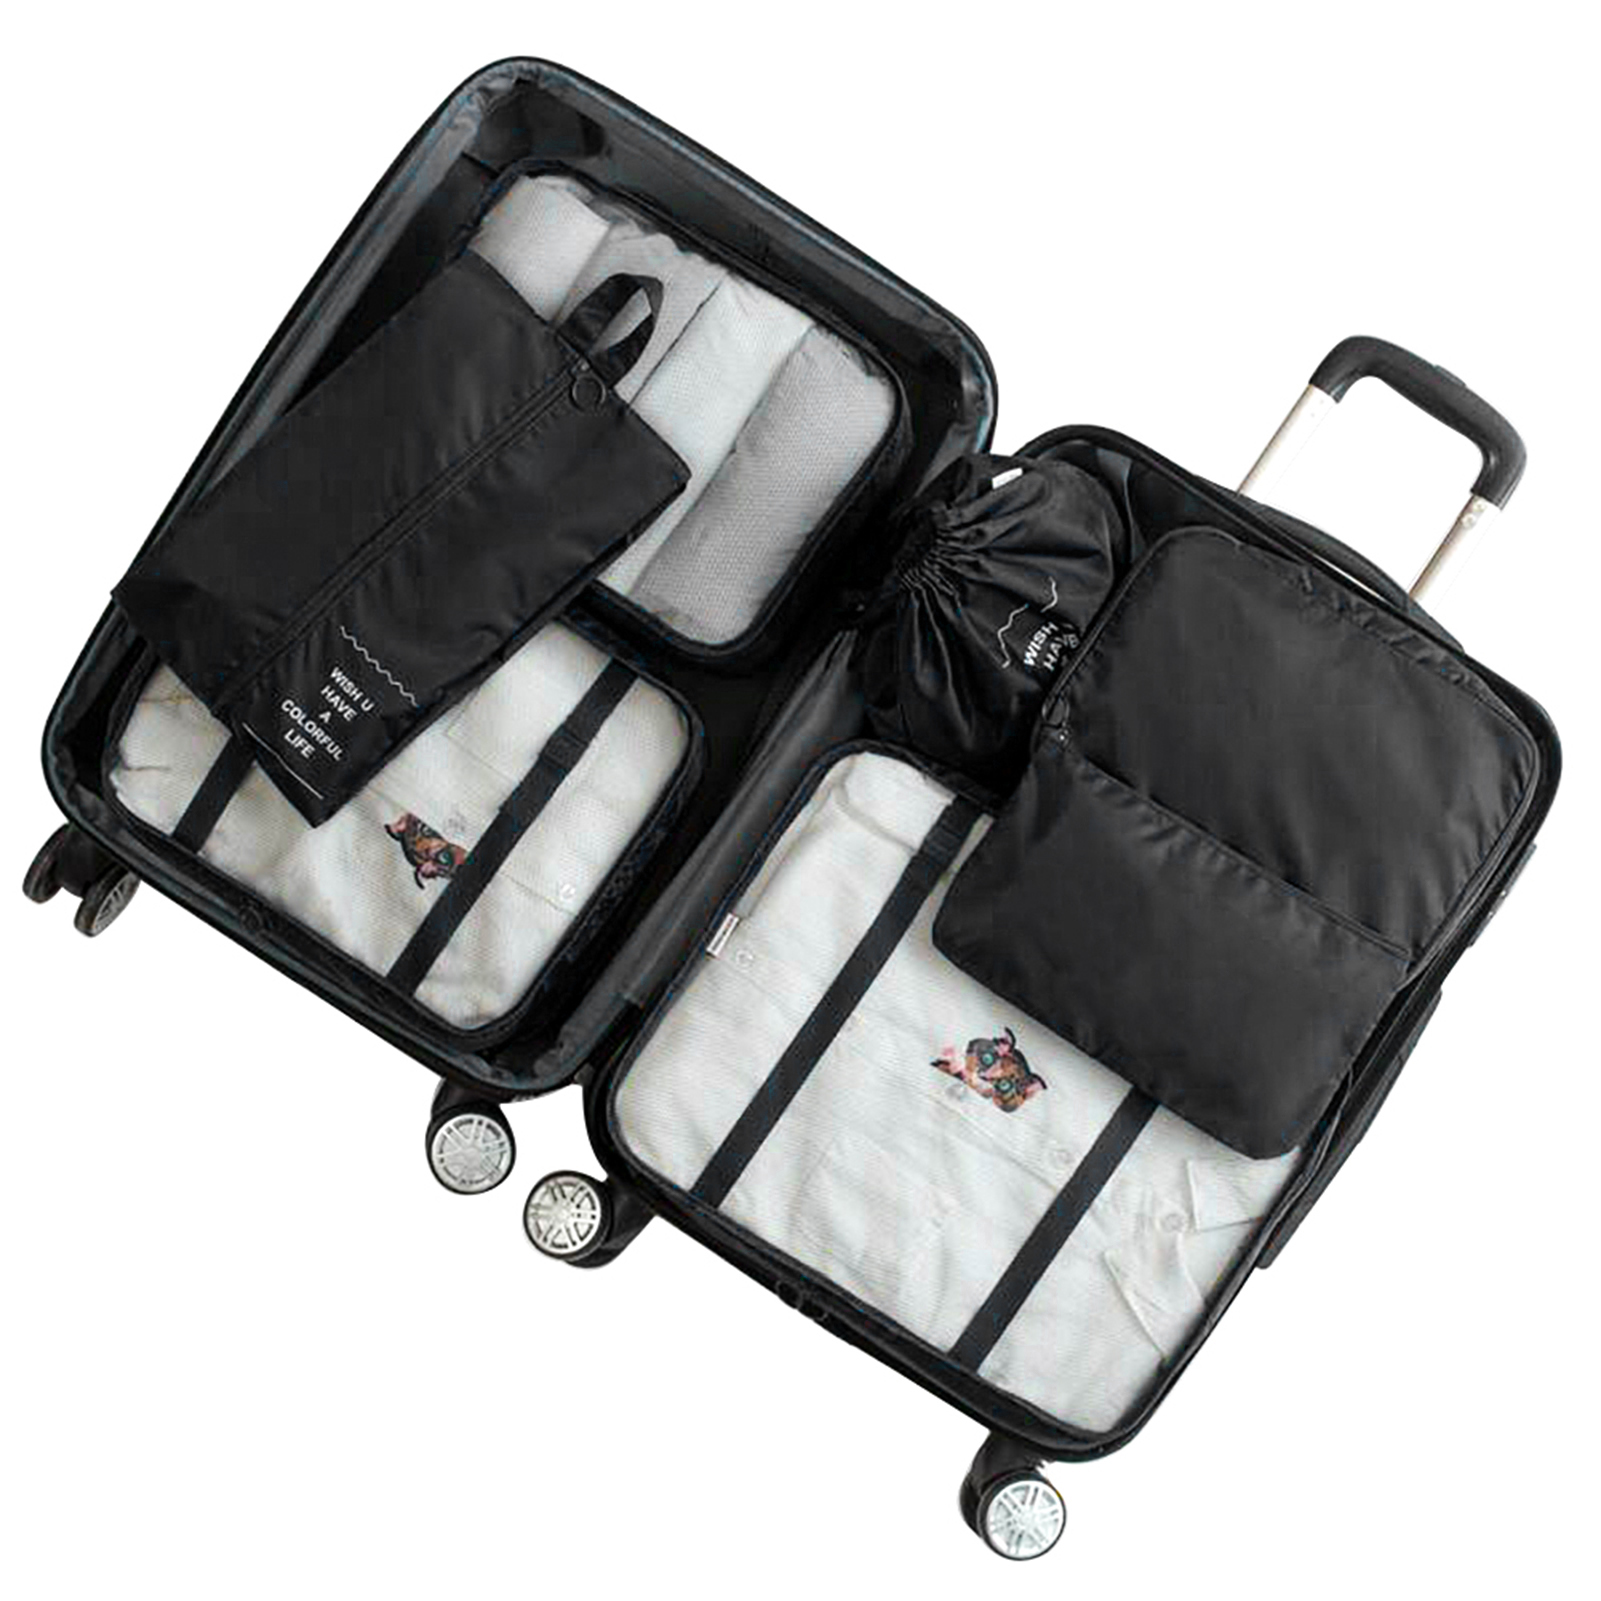 Mode & Accessoires Taschen Koffer & Reisegepäck Kofferzubehör 8 teilig Koffer Organizer Set Gepäck Koffer 